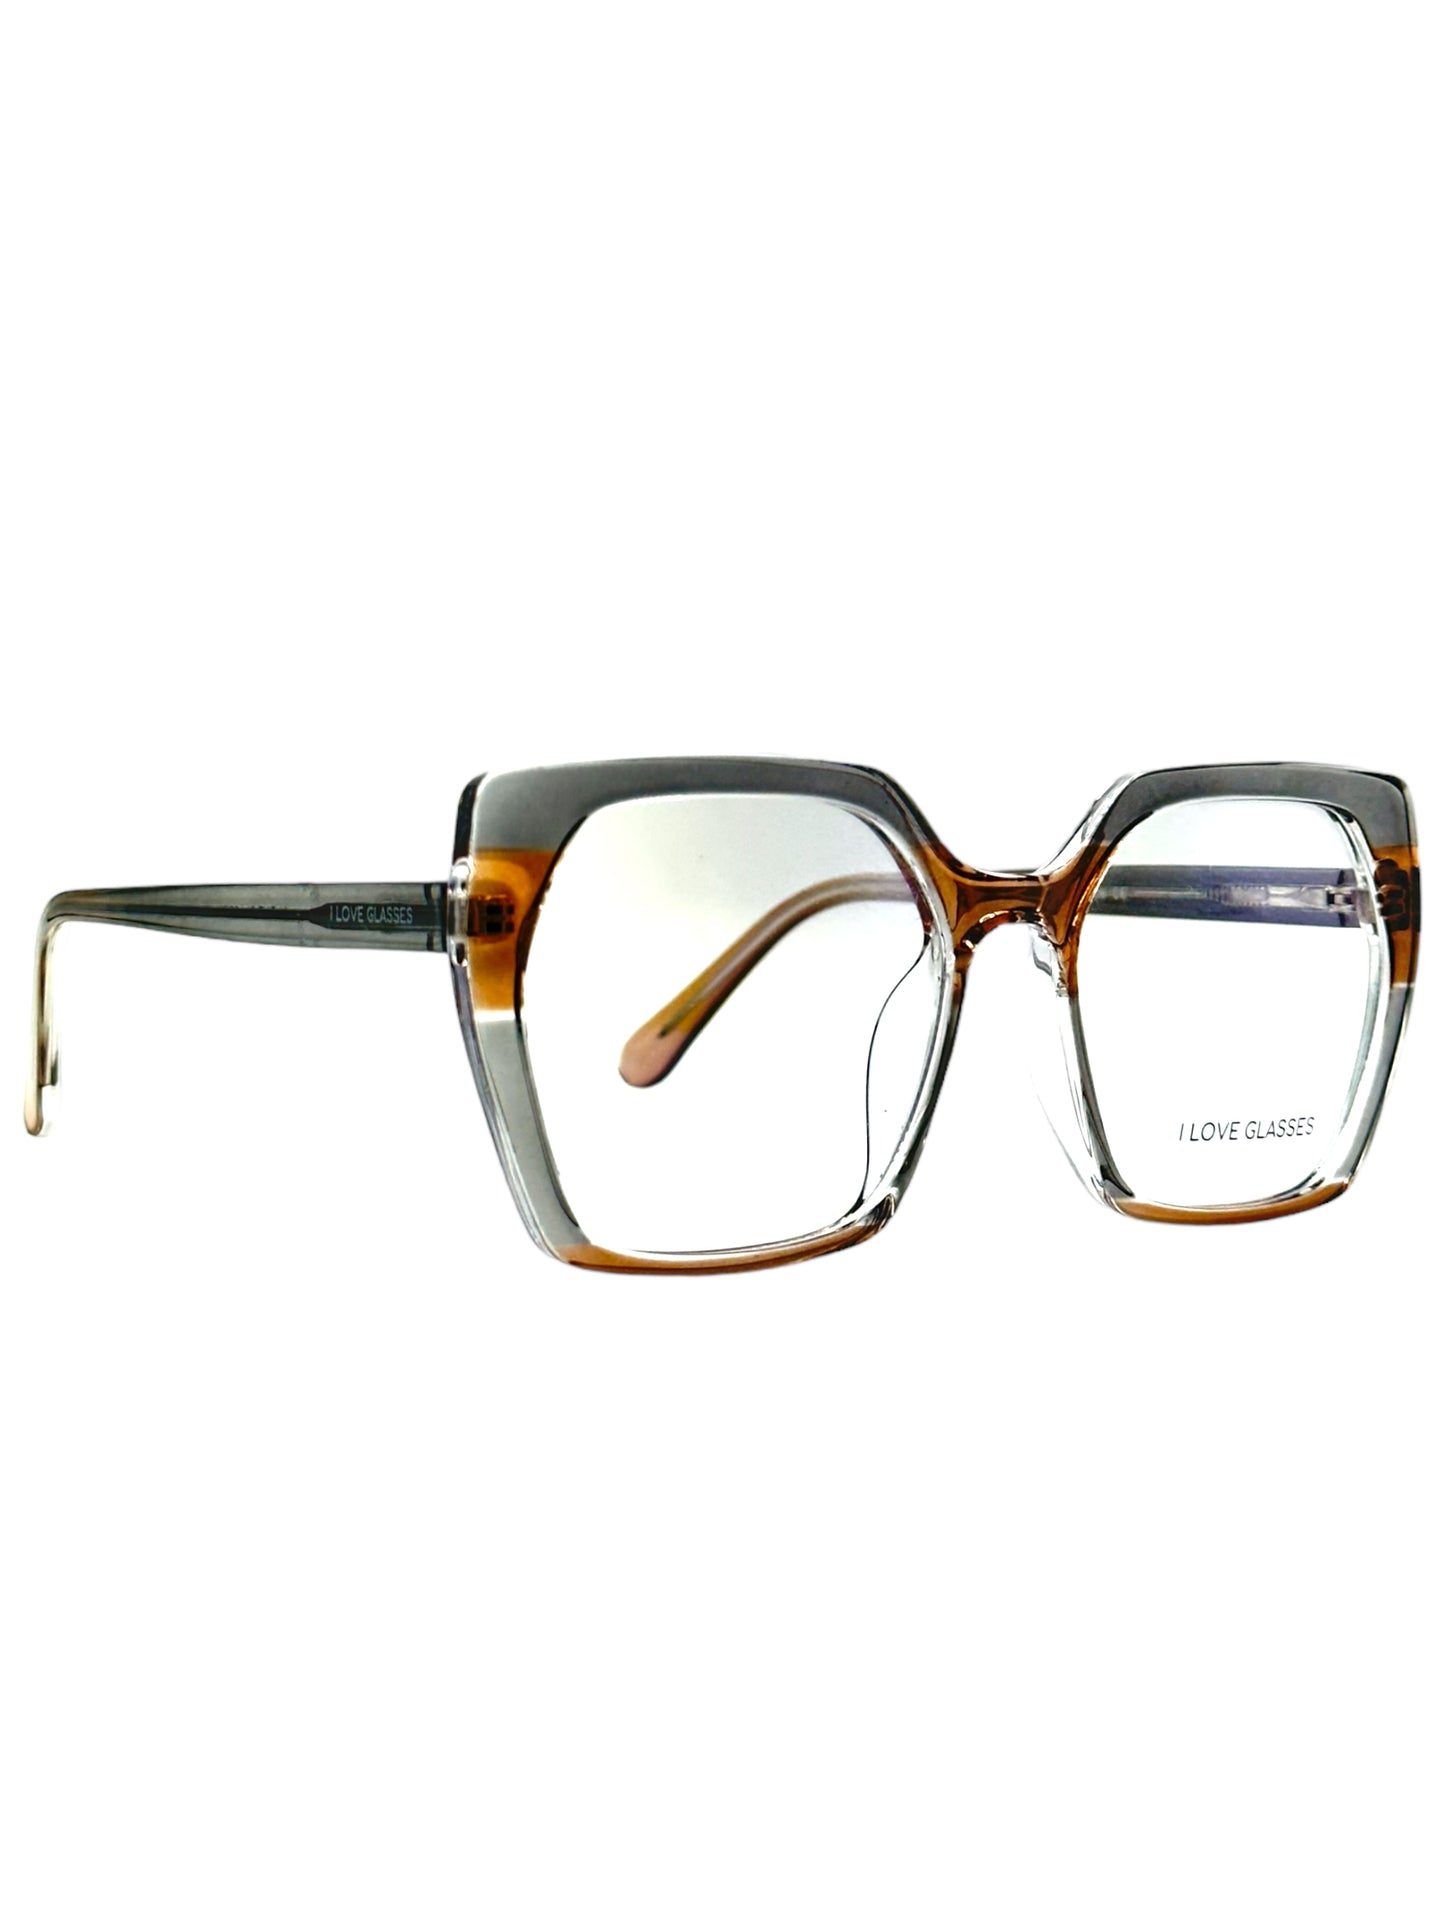 I Love Glasses 95931 C4